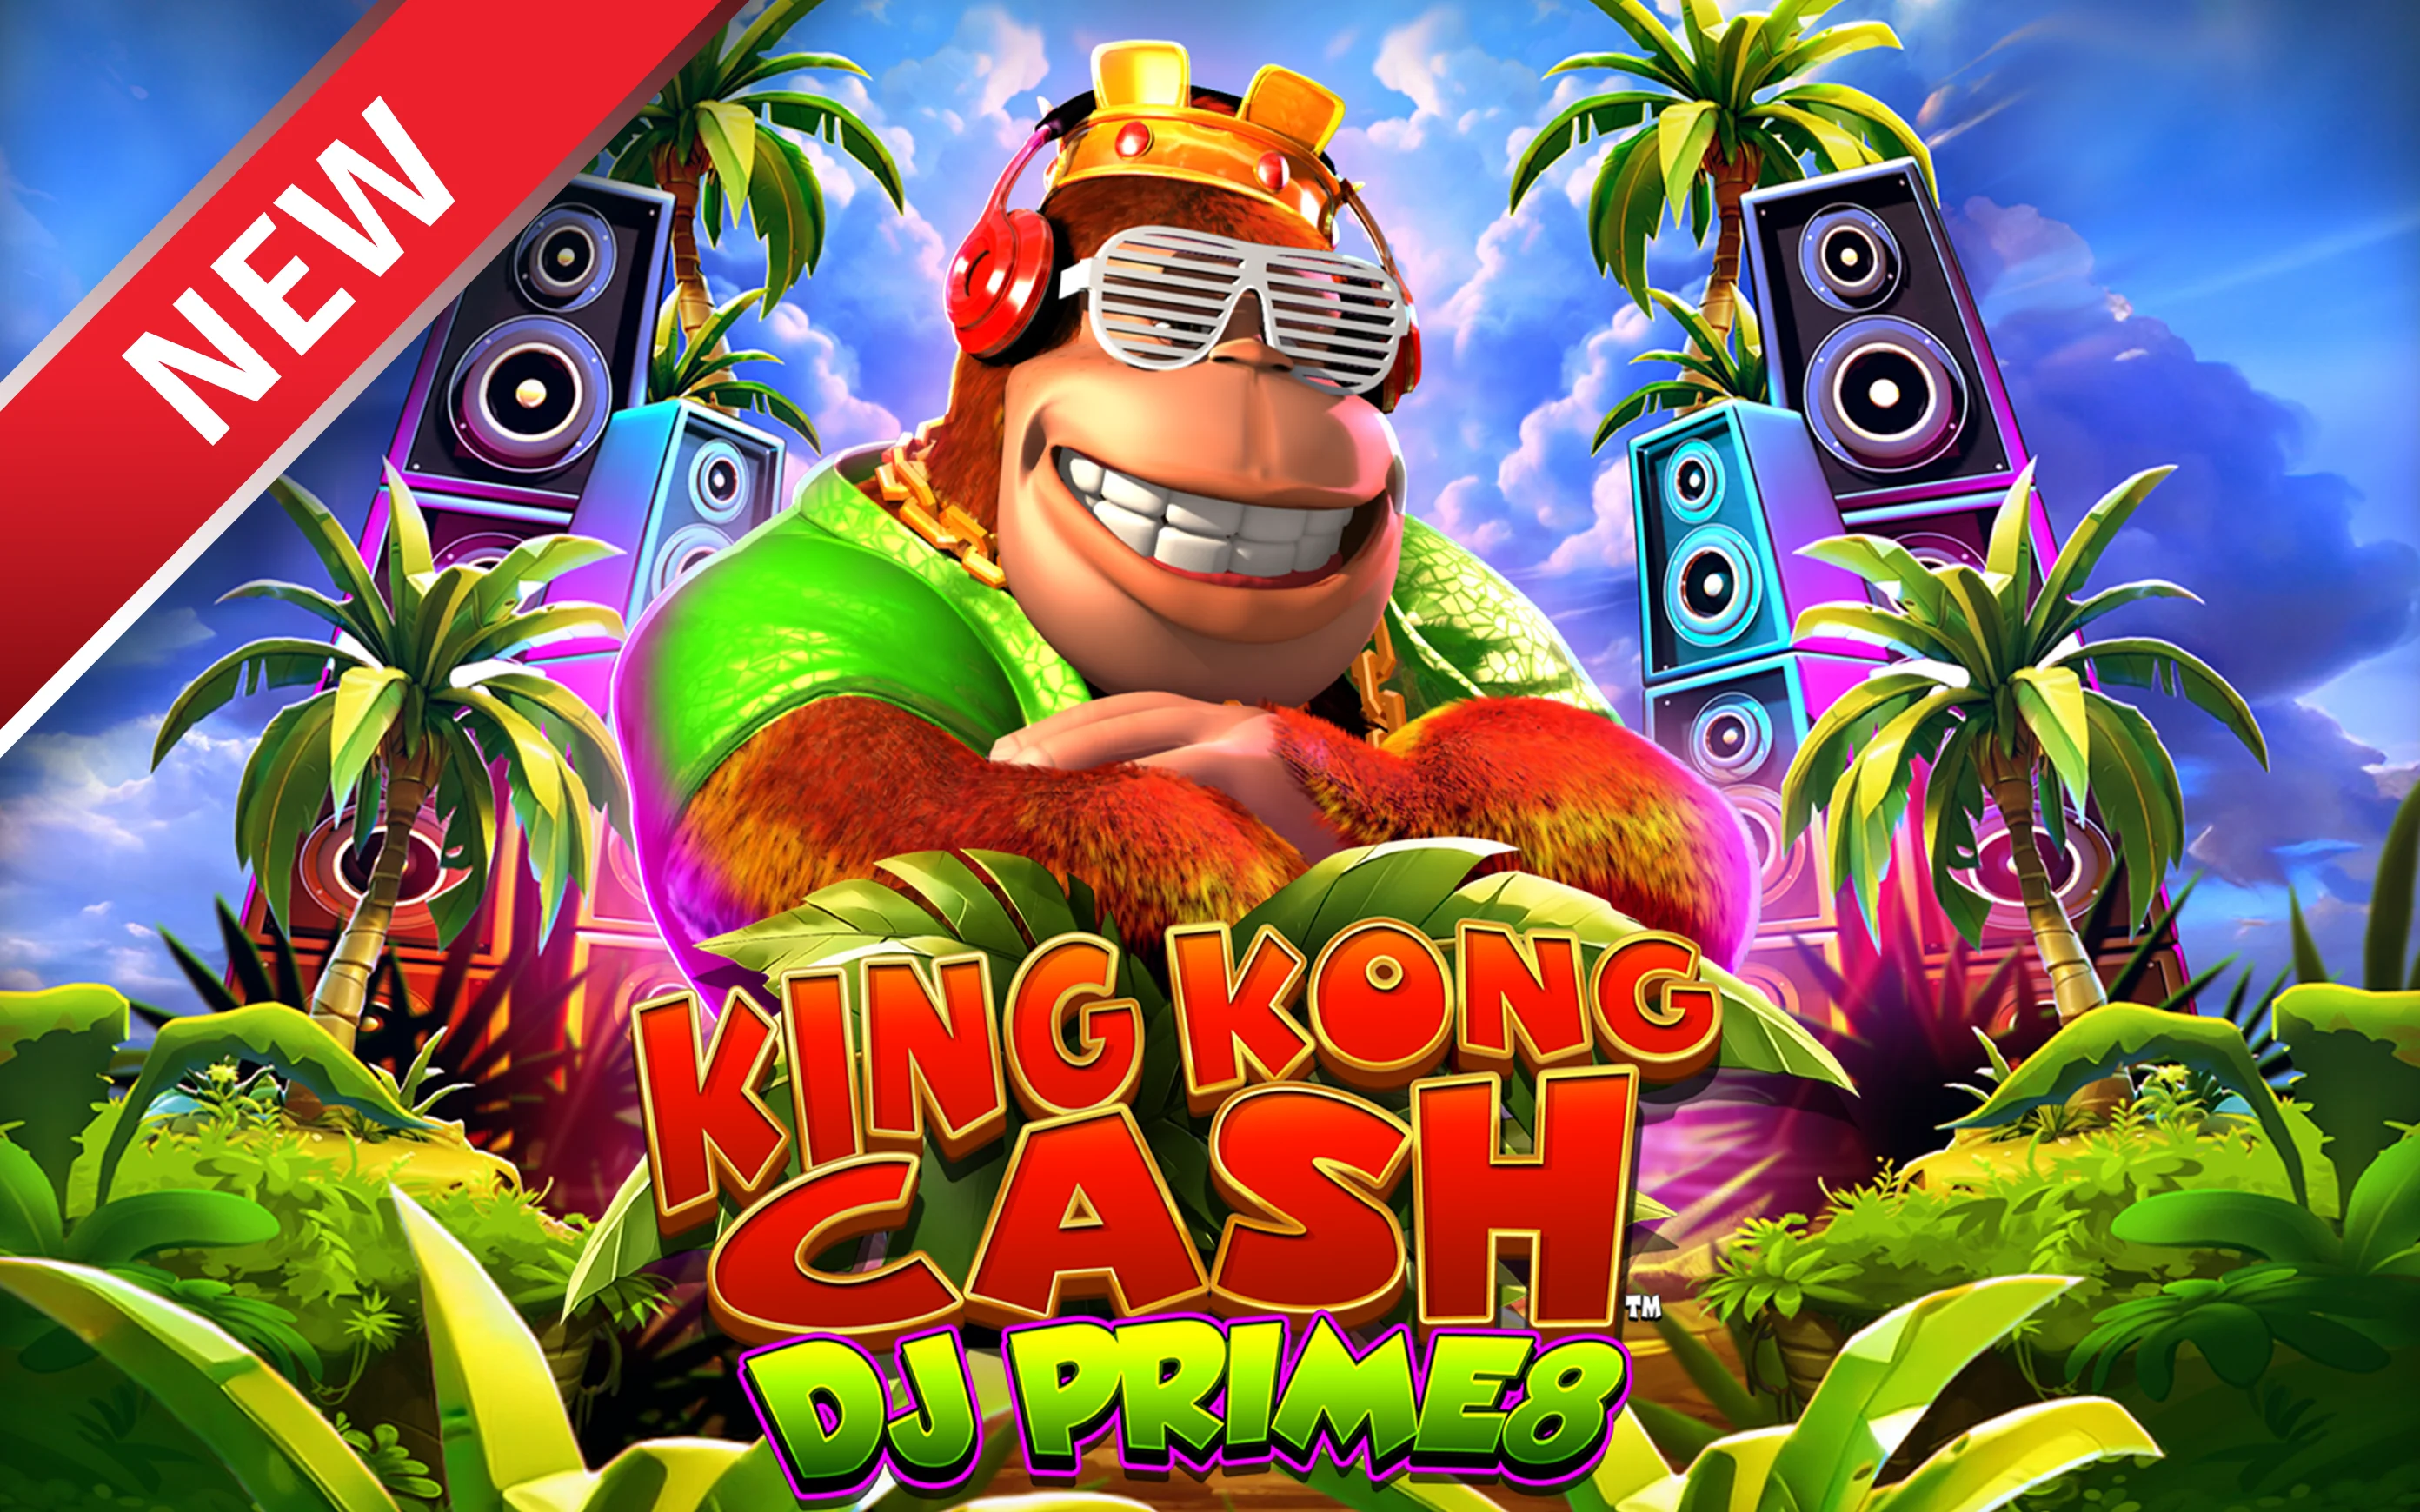 在Starcasino.be在线赌场上玩King Kong Cash DJ Prime8